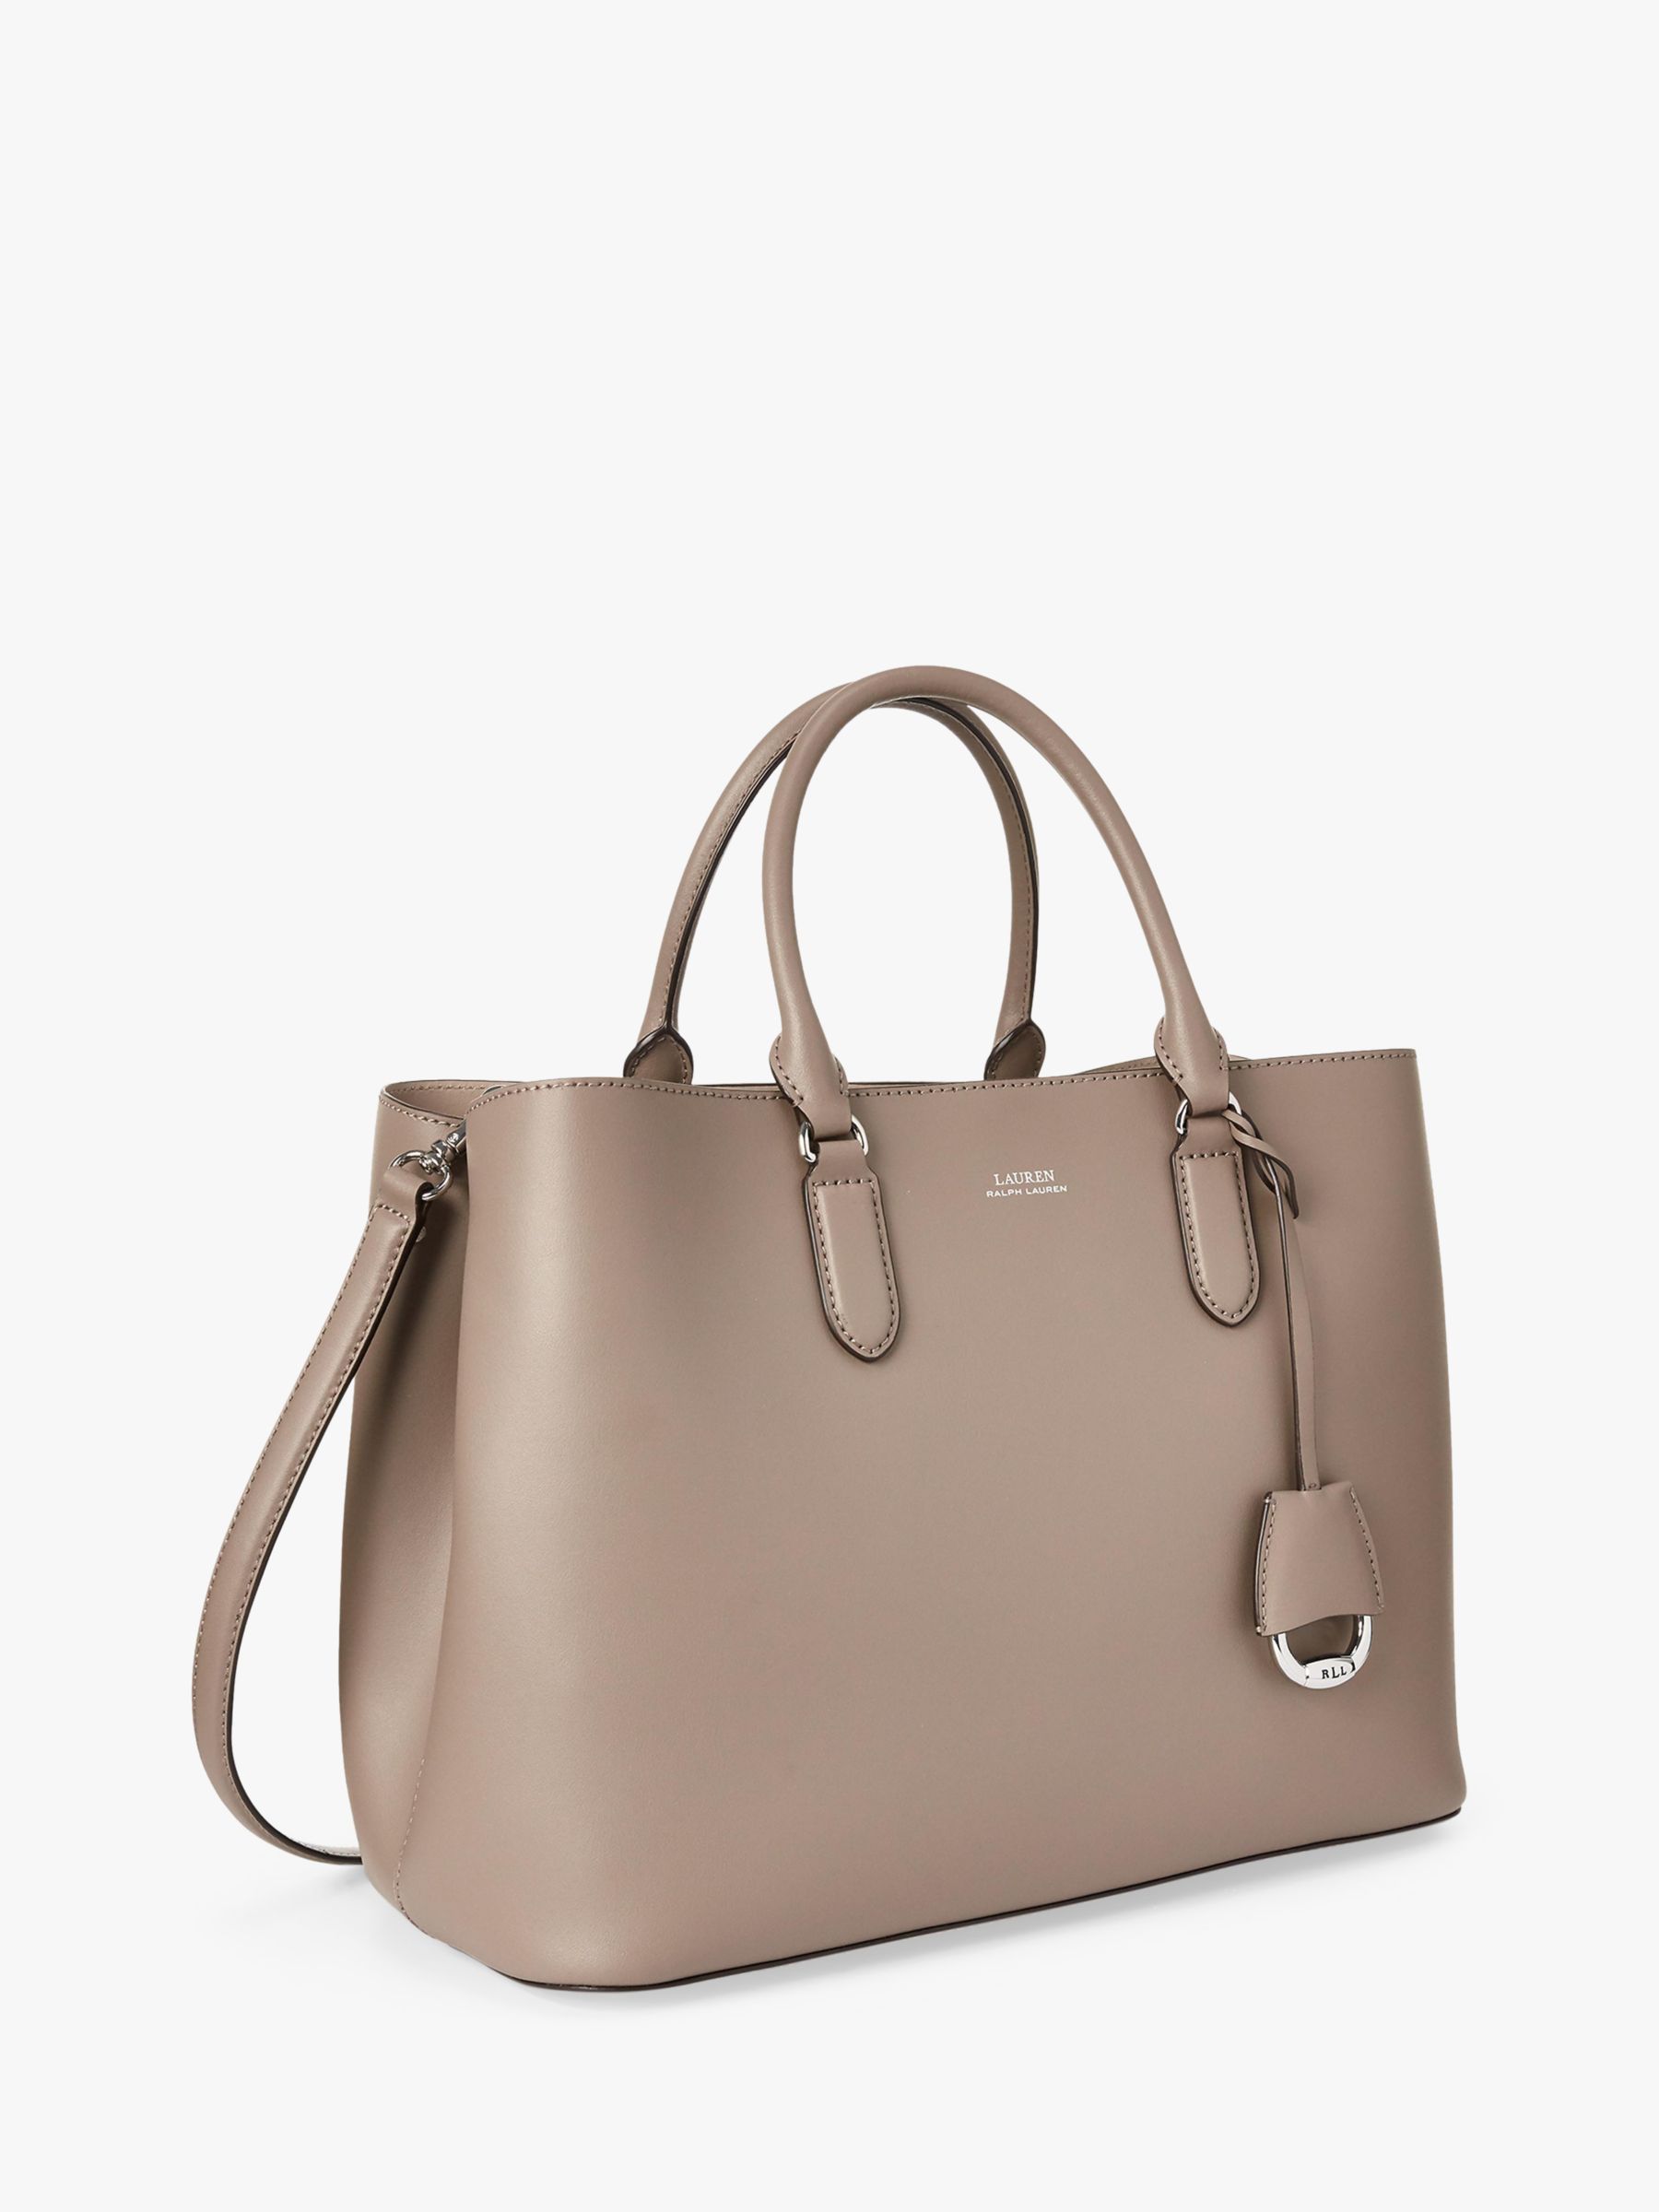 Lauren Ralph Lauren Marcy Leather Satchel Bag at John Lewis & Partners